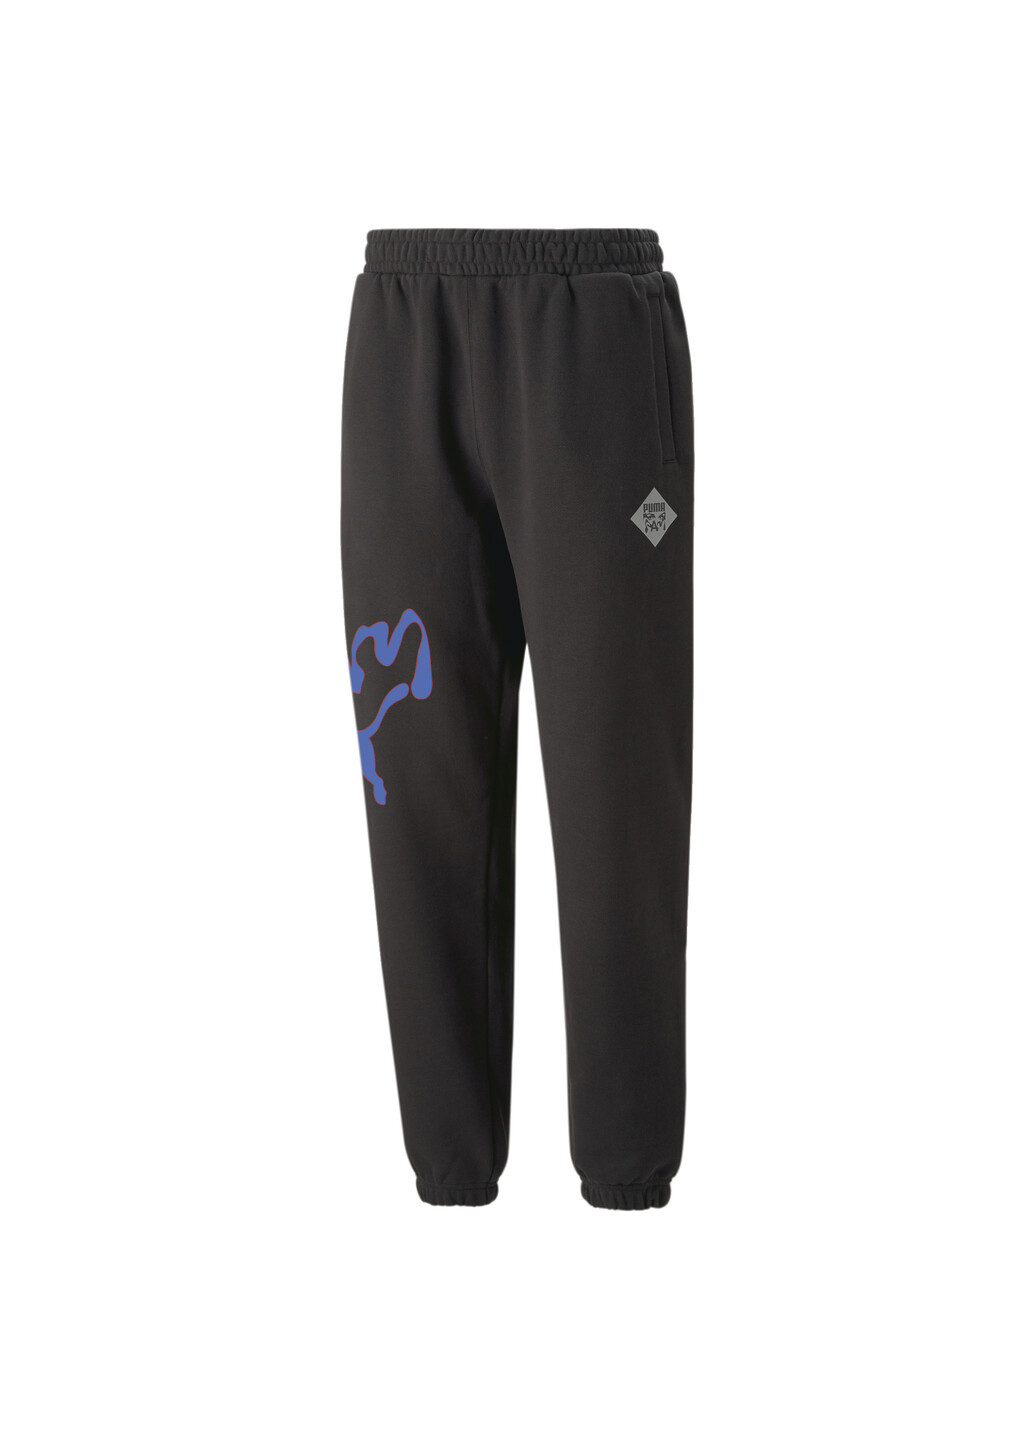 Спортивные штаны x PERKS AND MINI Graphic Sweatpants Puma (276963013)